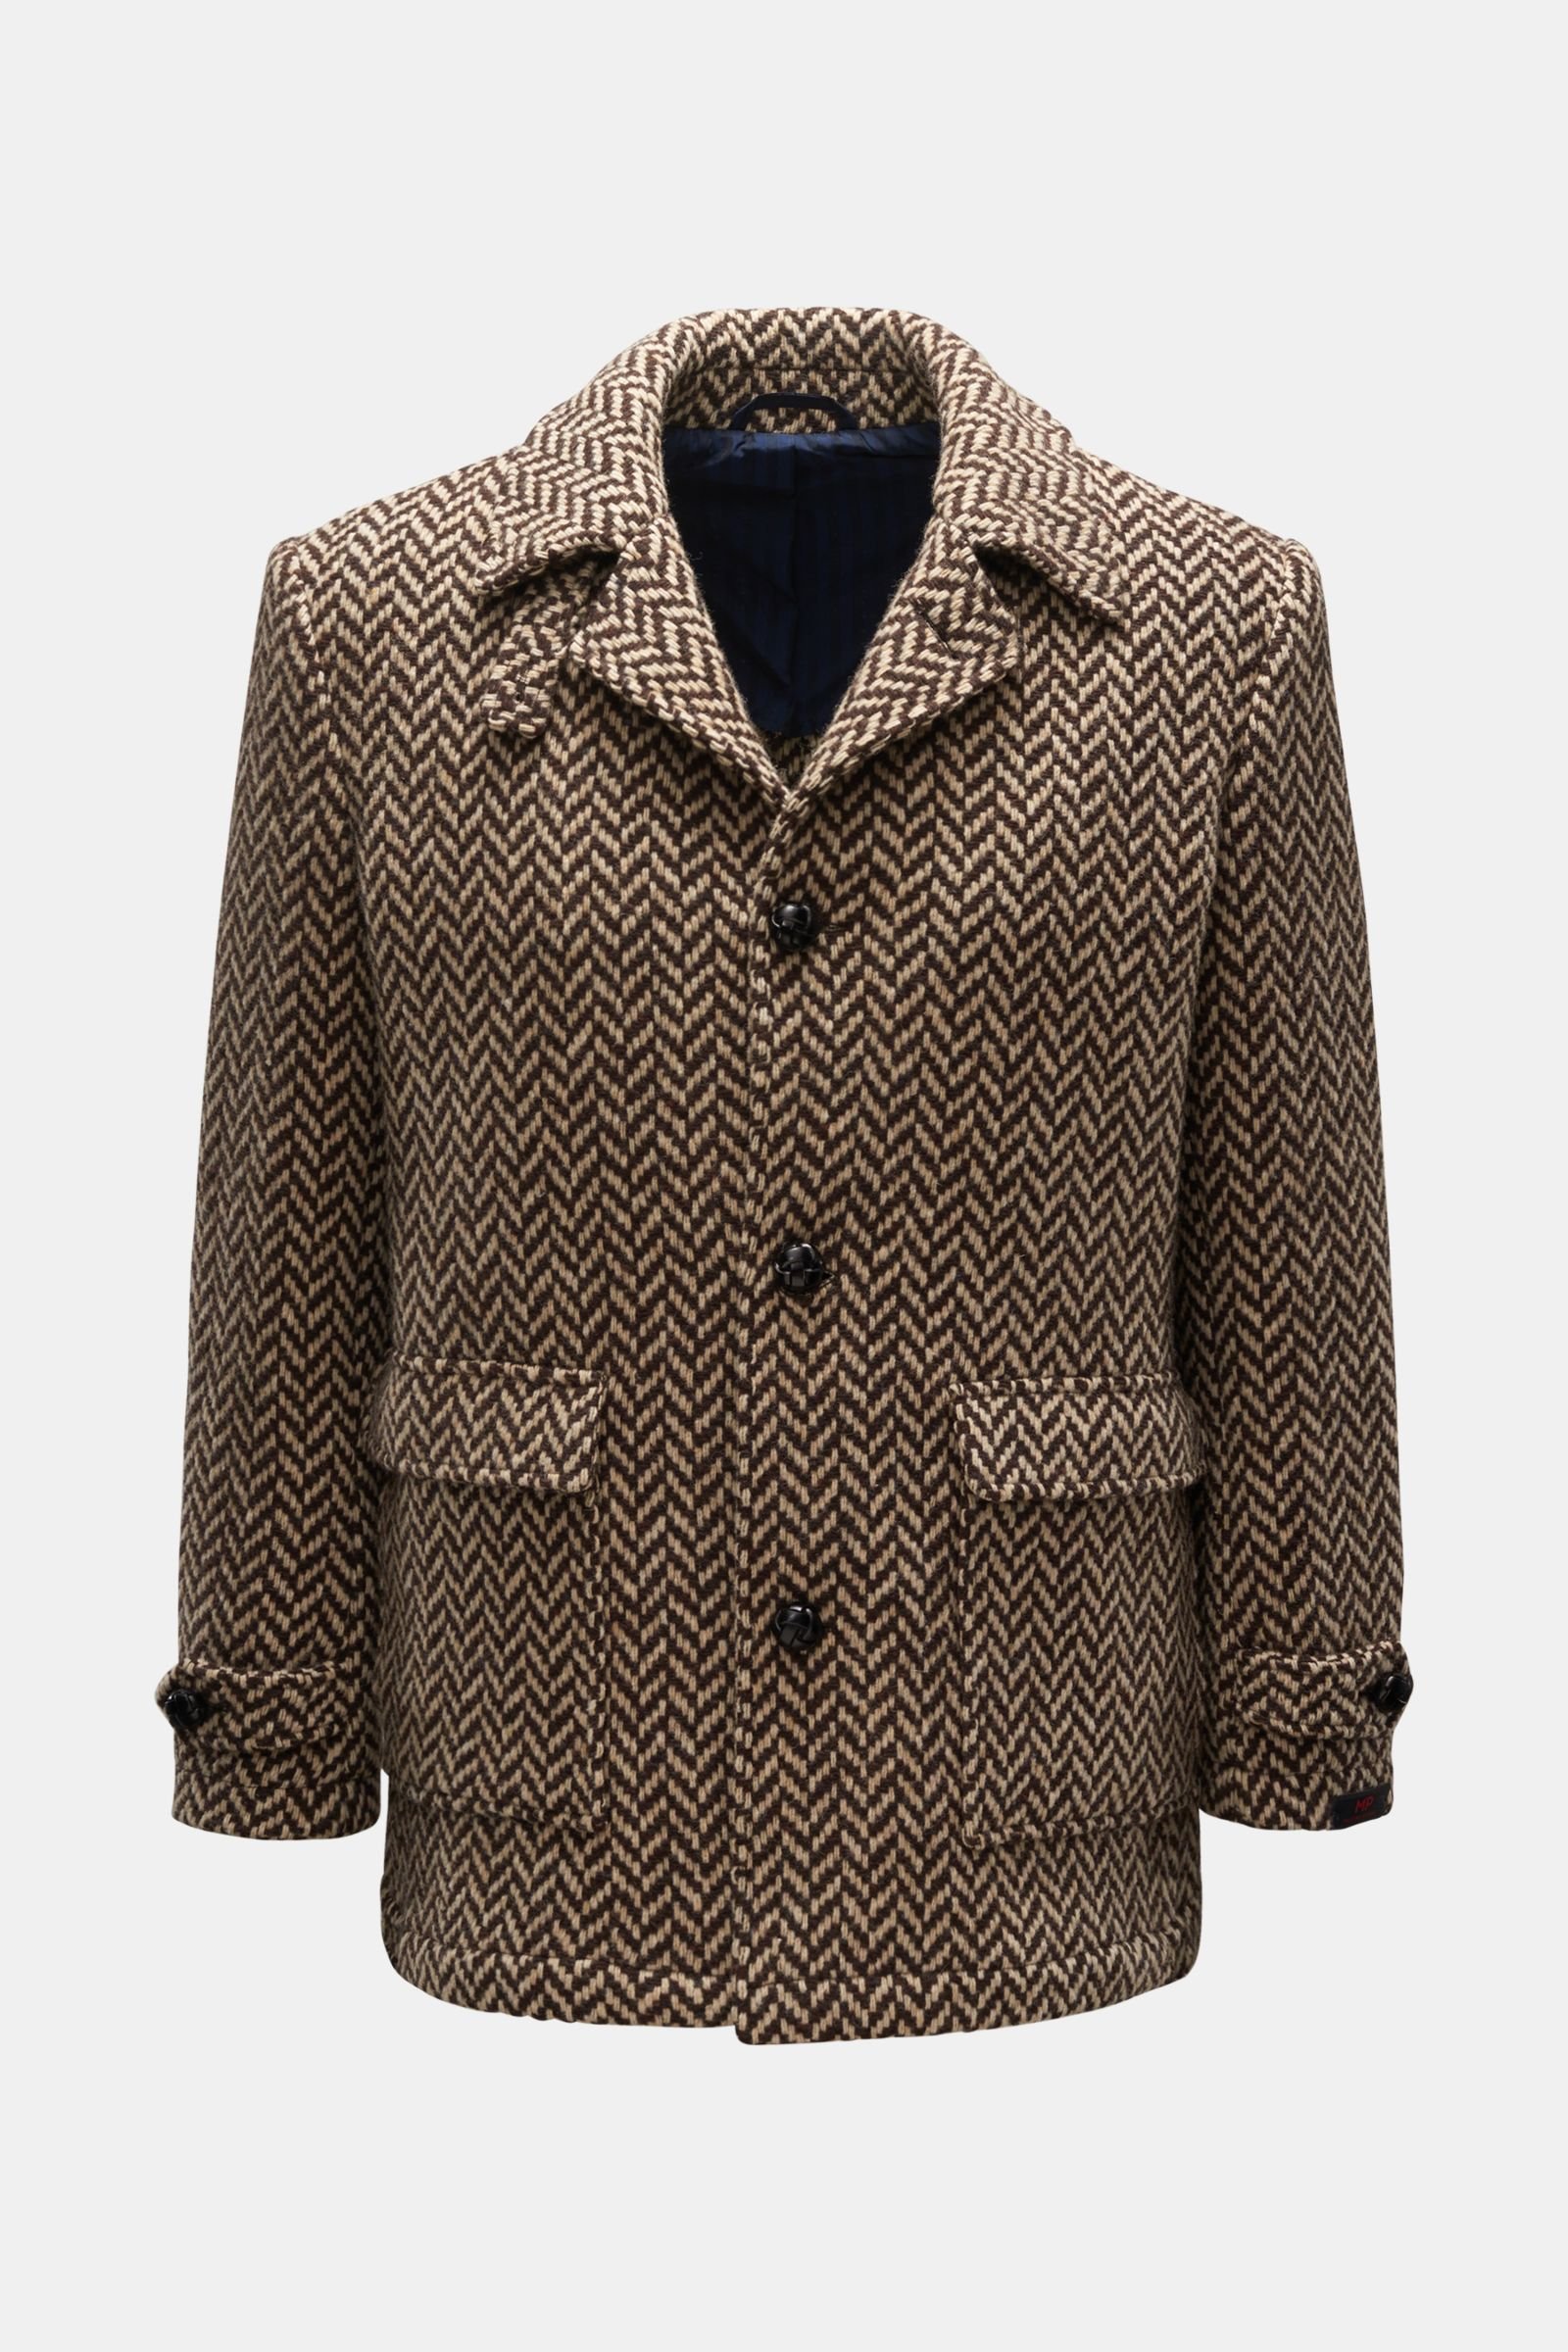 Wool jacket 'Klee' brown/beige patterned